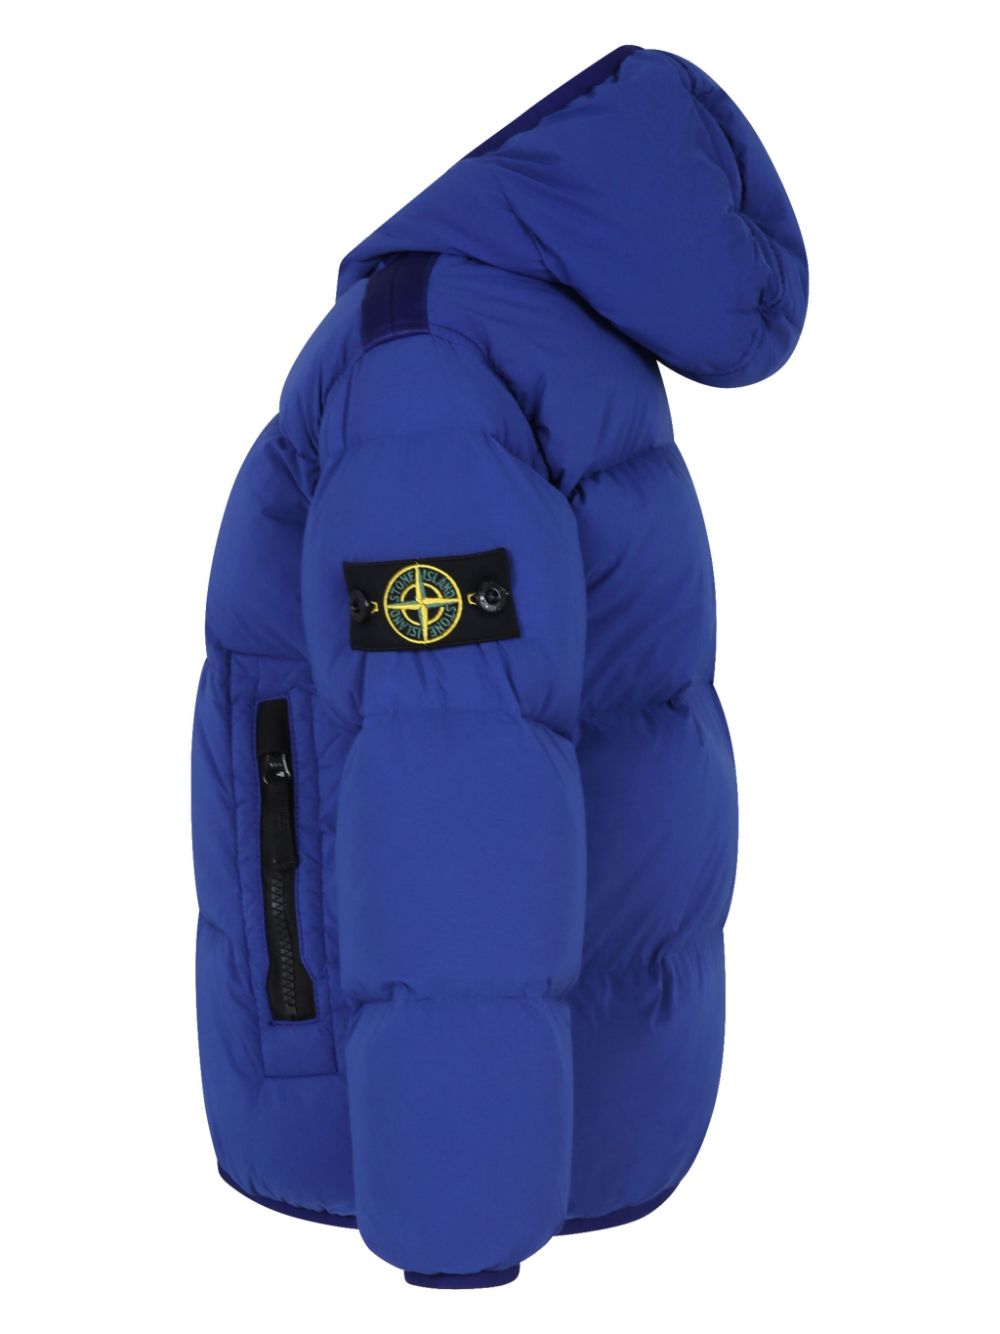 Blue nylon padded jacket for children